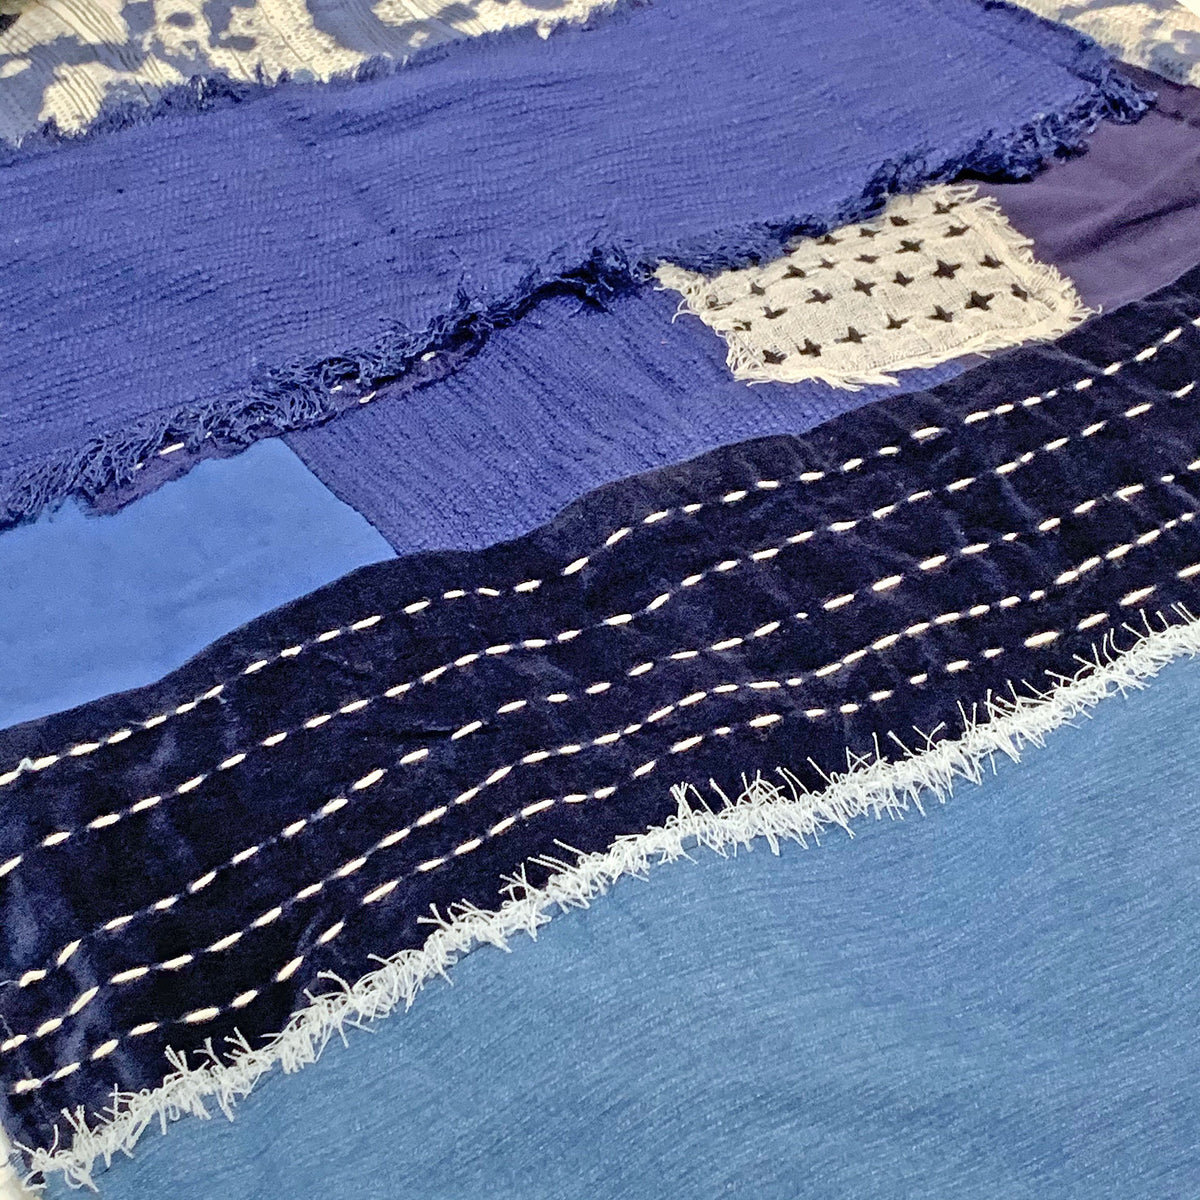 Detail of indigo dyed throw with white stitching across the indigo fabric